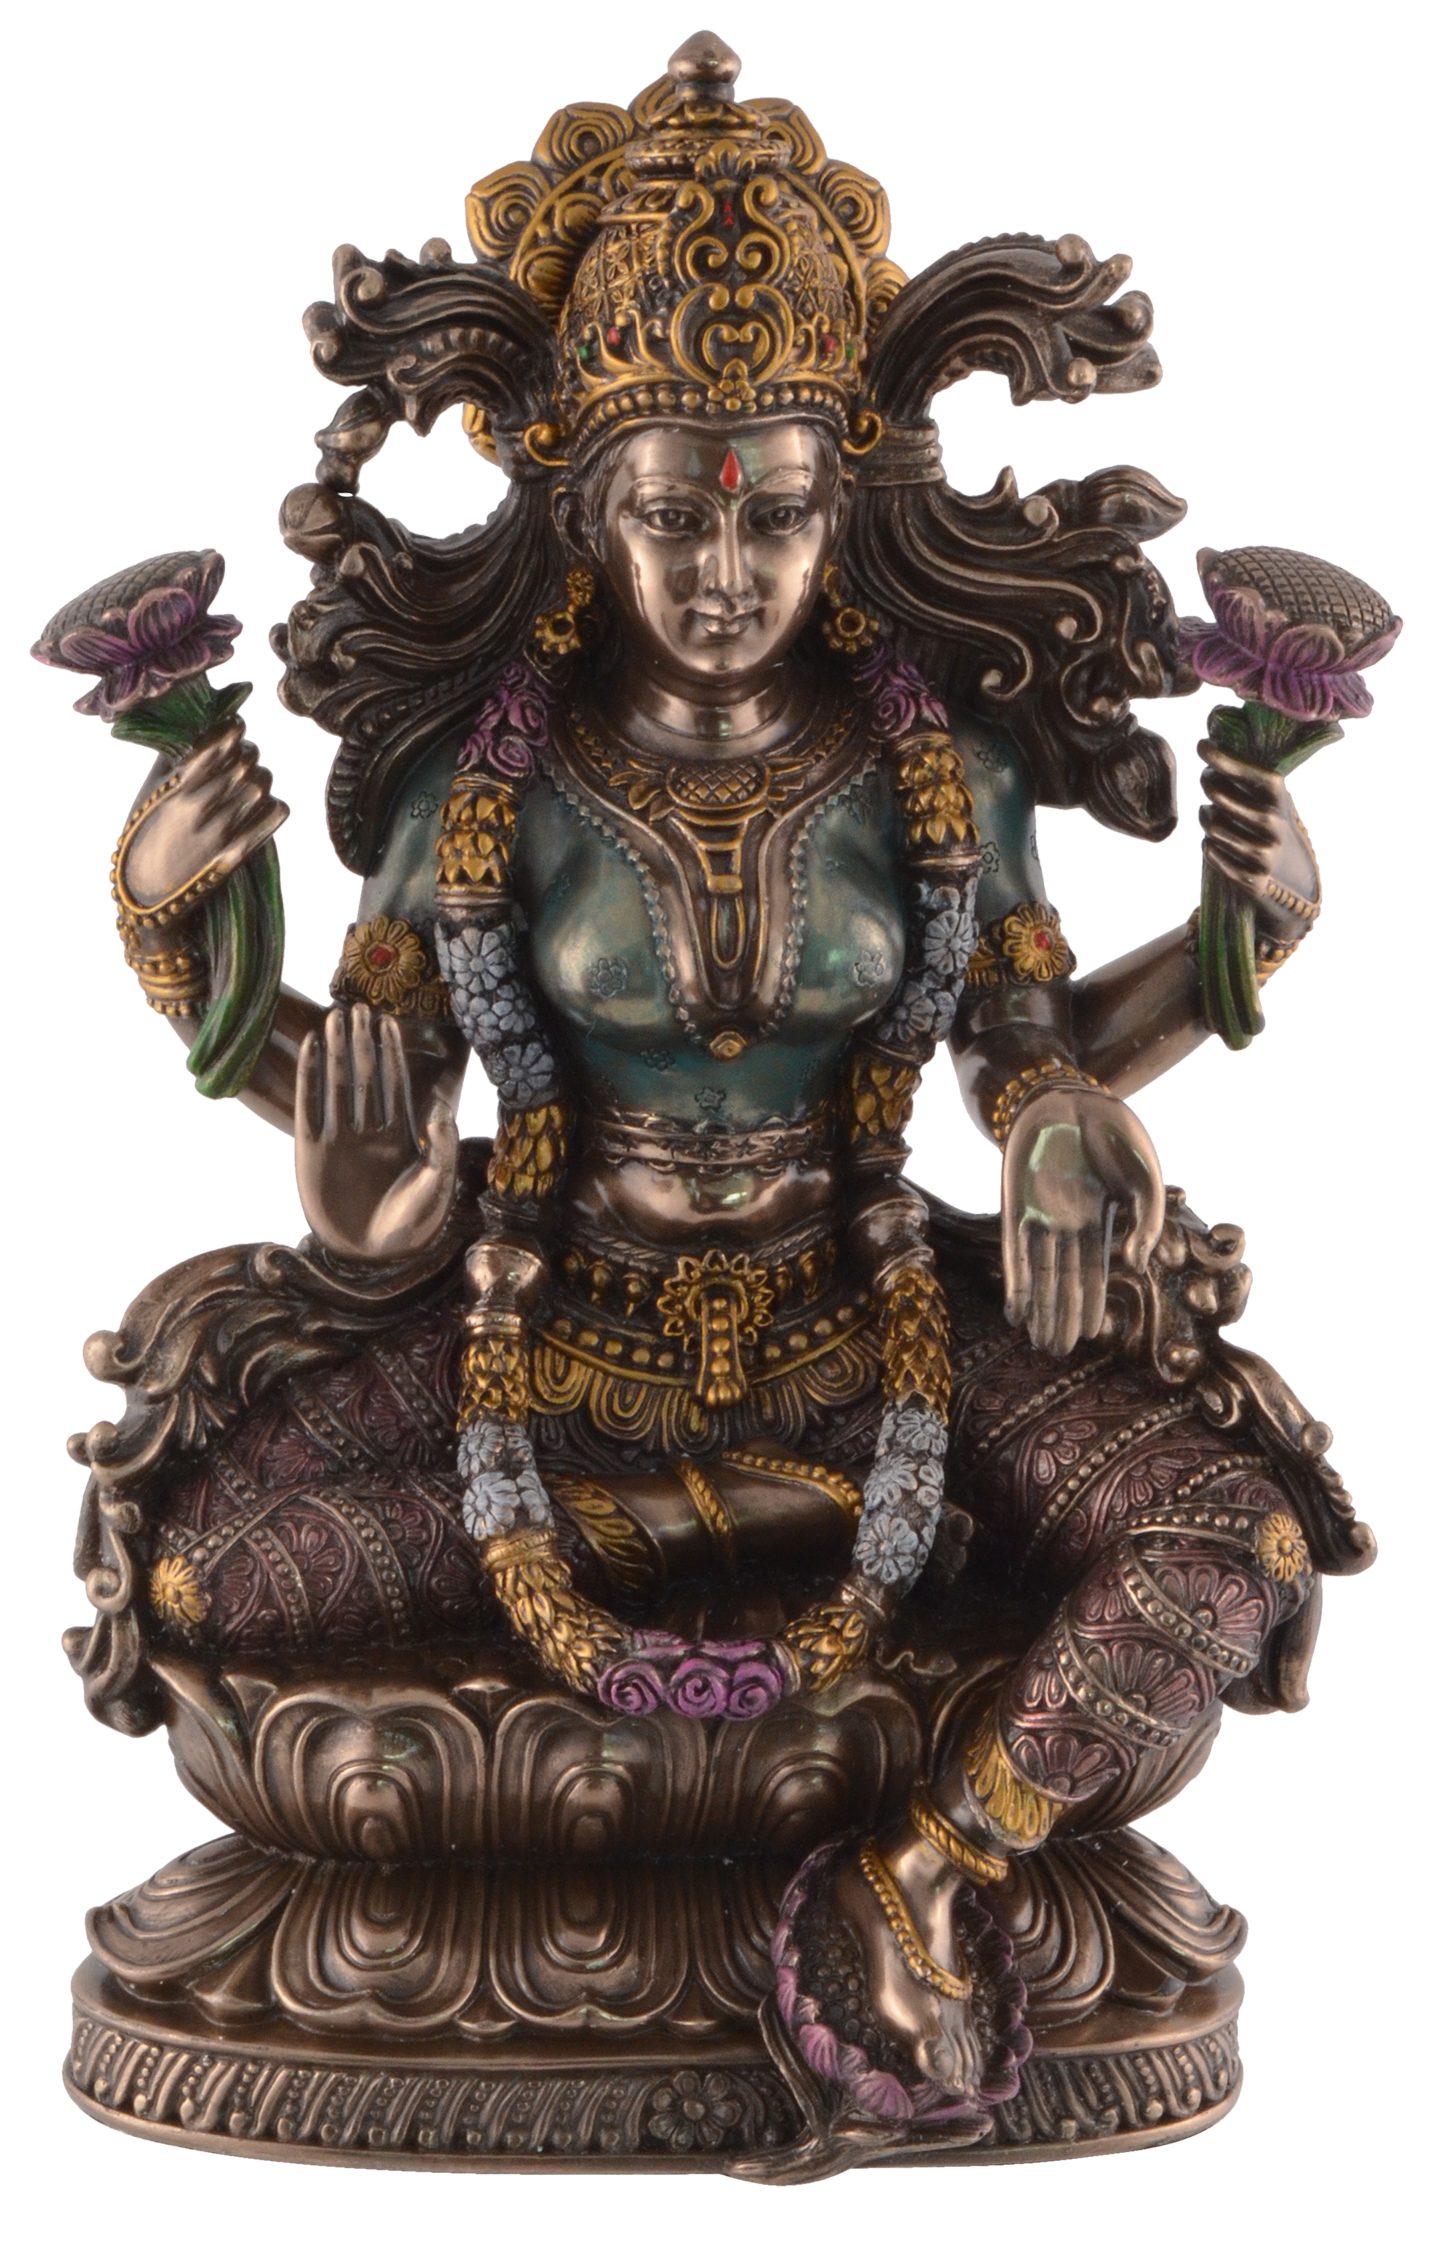 Vogler direct Gmbh Dekofigur Lakshmi Indische Göttin des Wohlstands auf Lotusthron by Veronese, von Hand bronziert und coloriert, LxBxH ca. 16x10x24cm